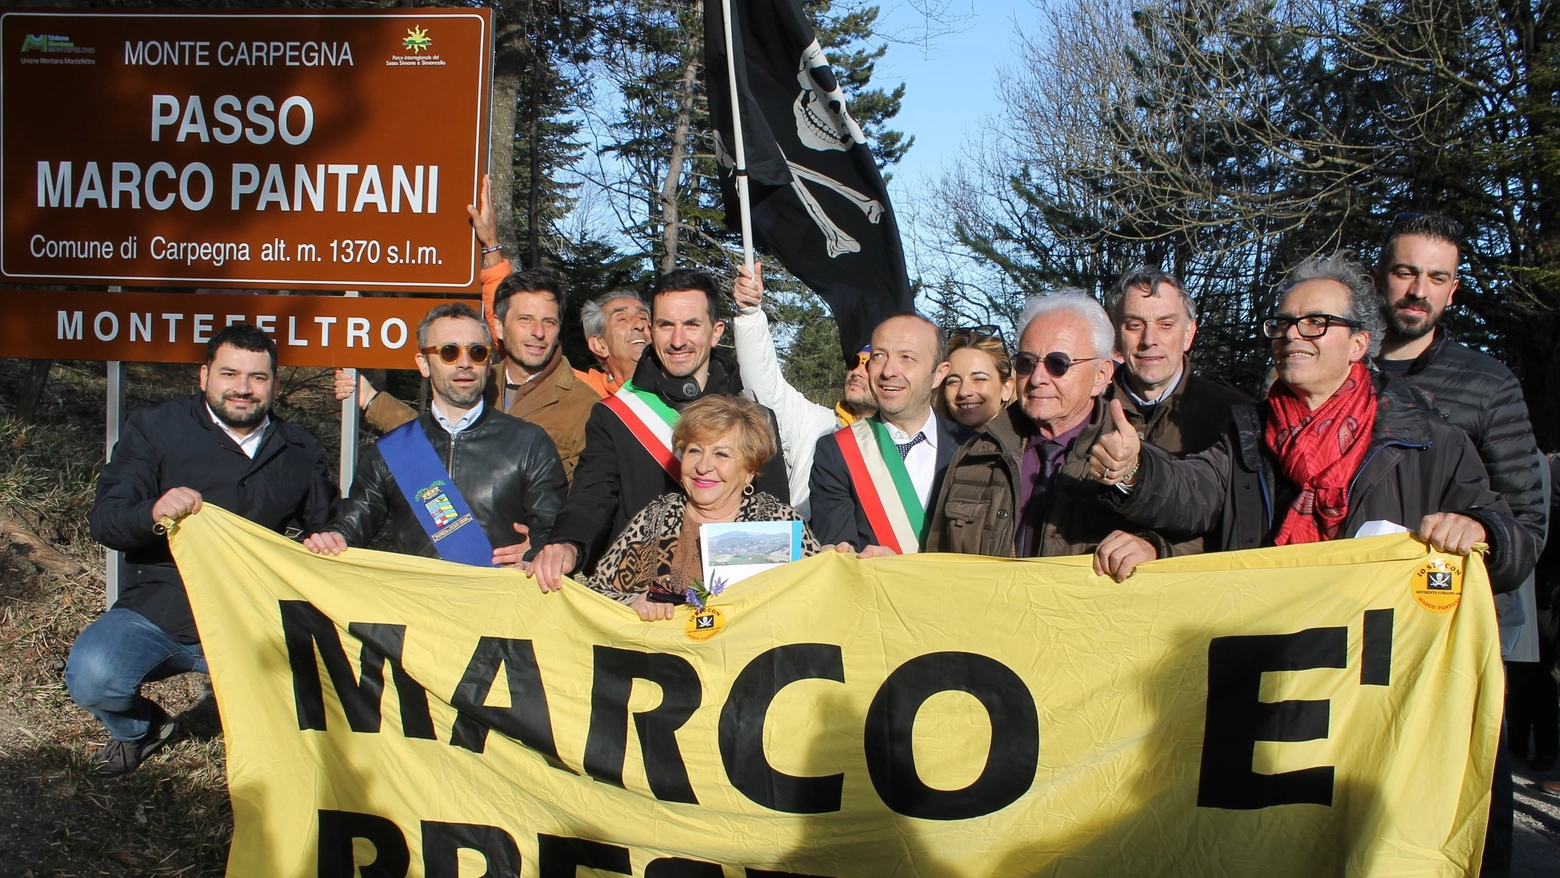 L'inaugurazione del Passo Marco Pantani sul monte Carpegna